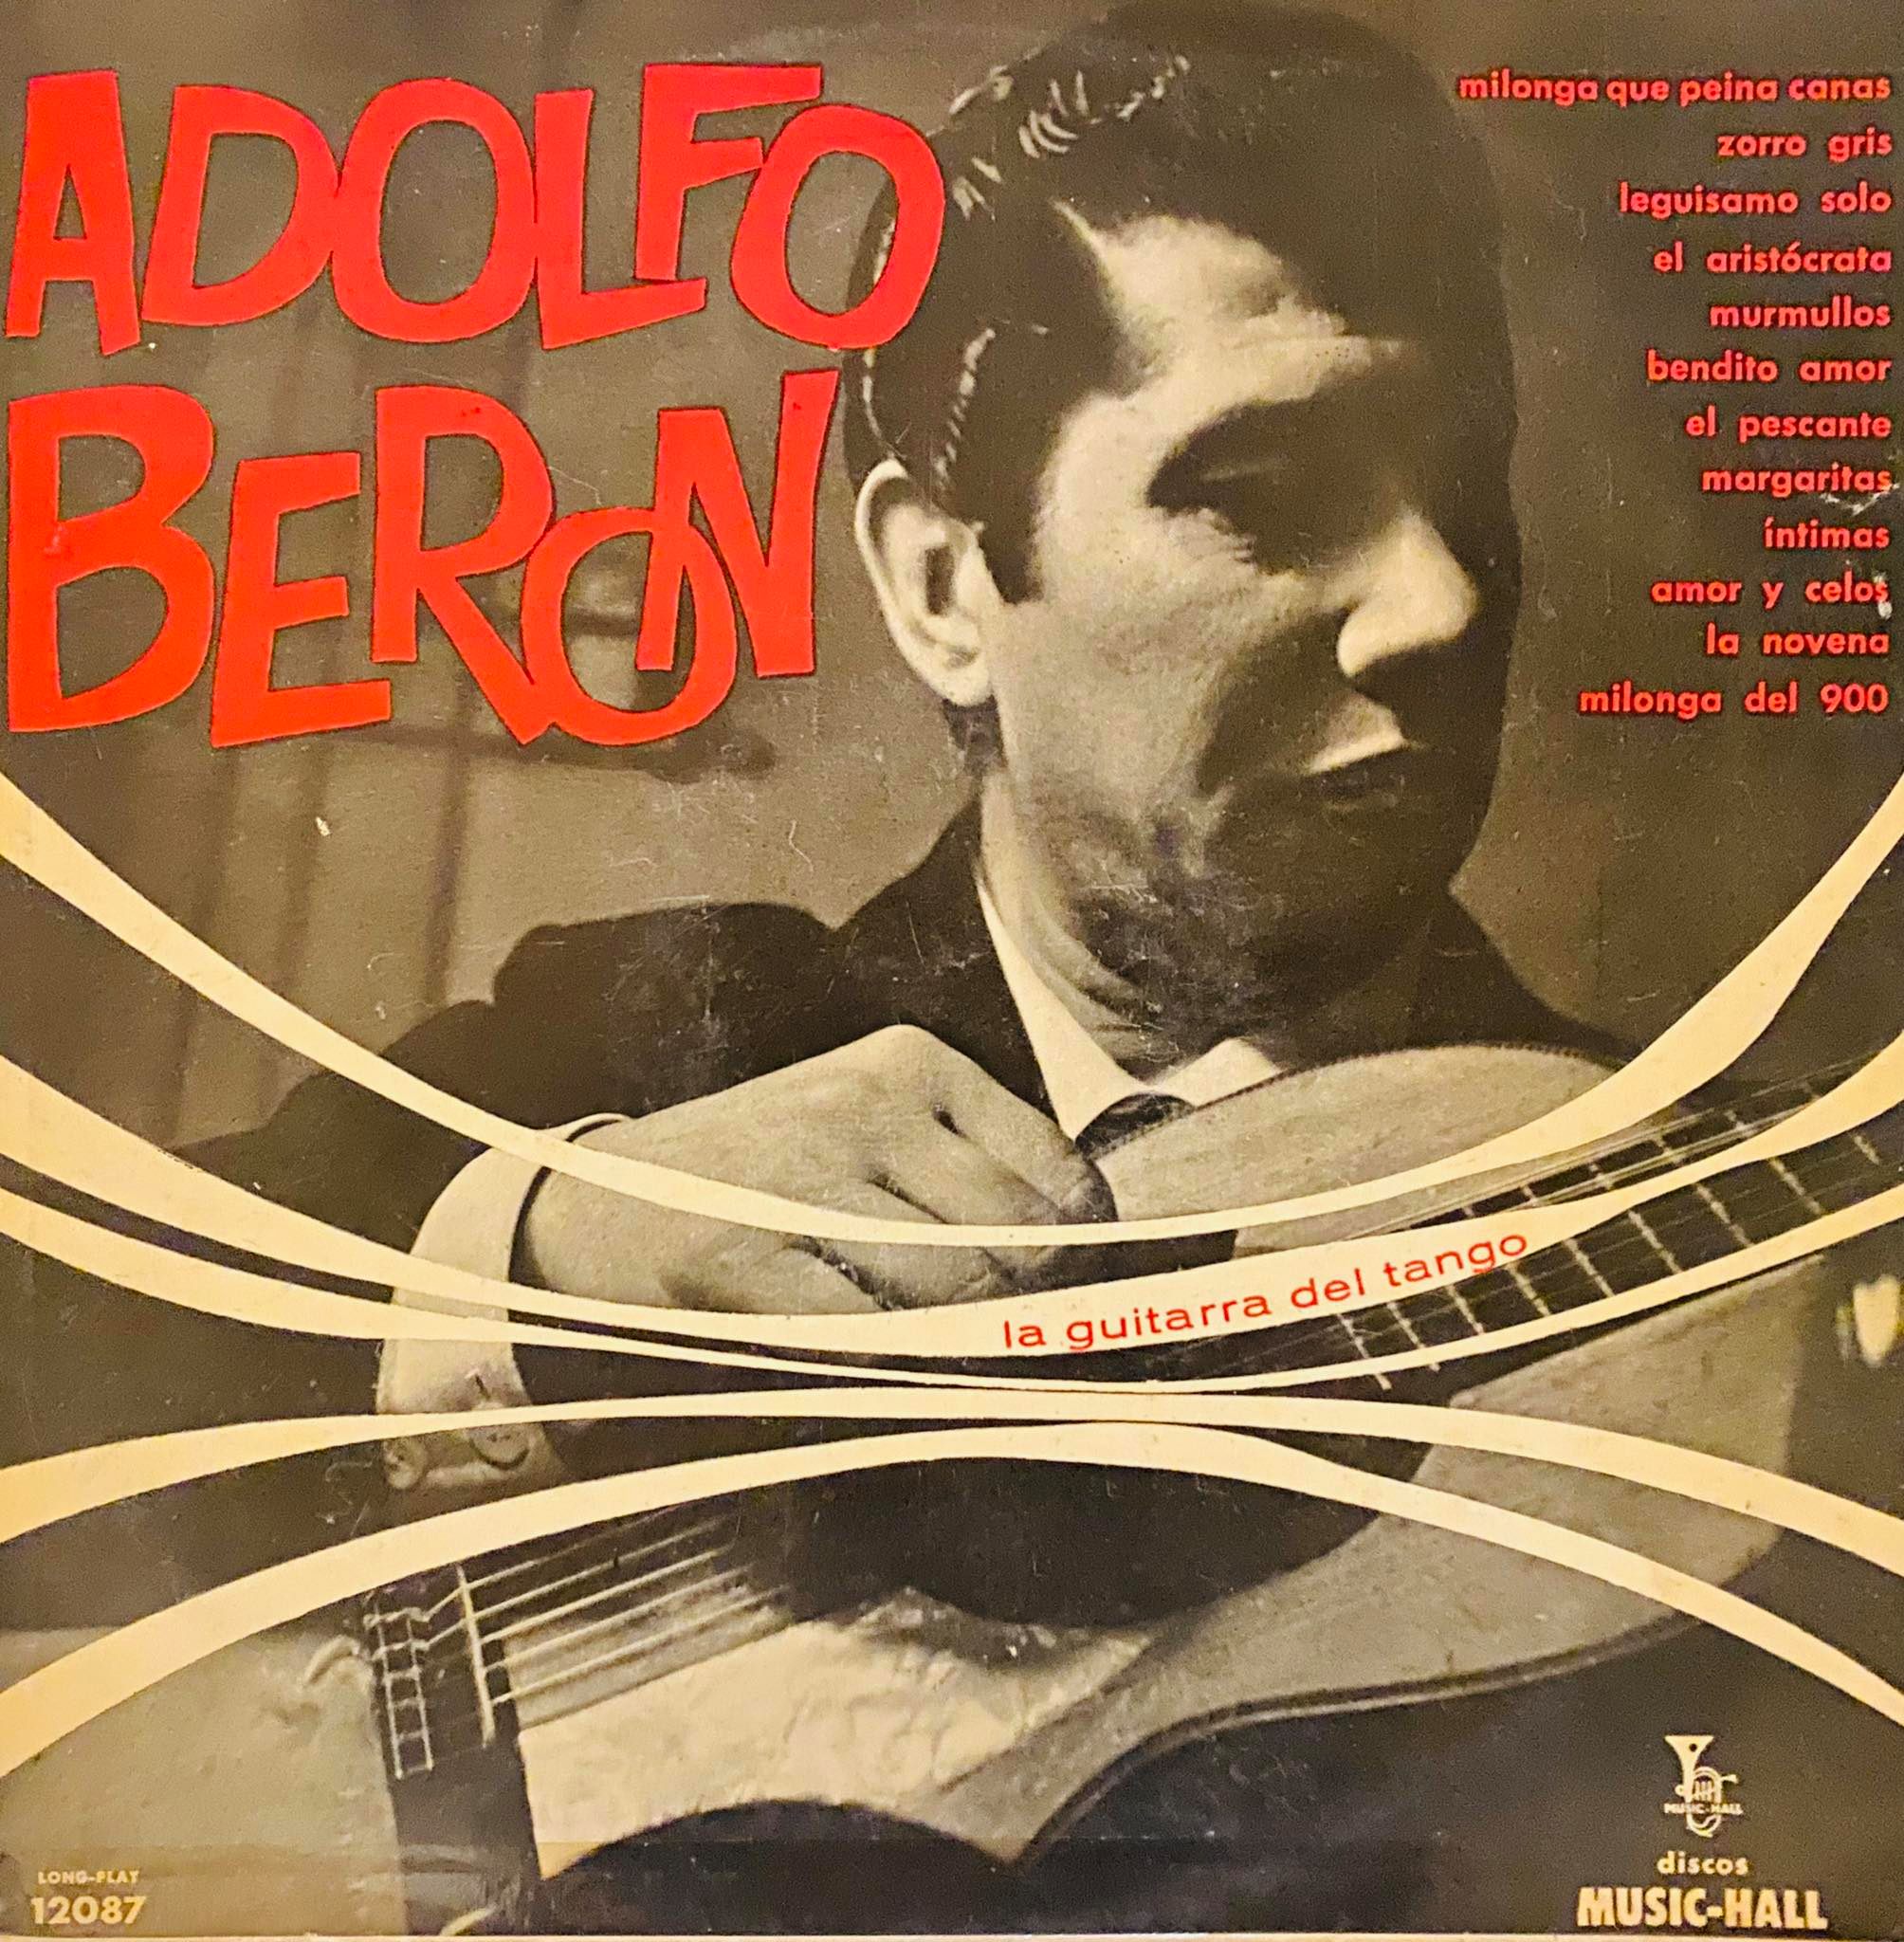 Adolfo Beron ''La Guitarra del Tango''